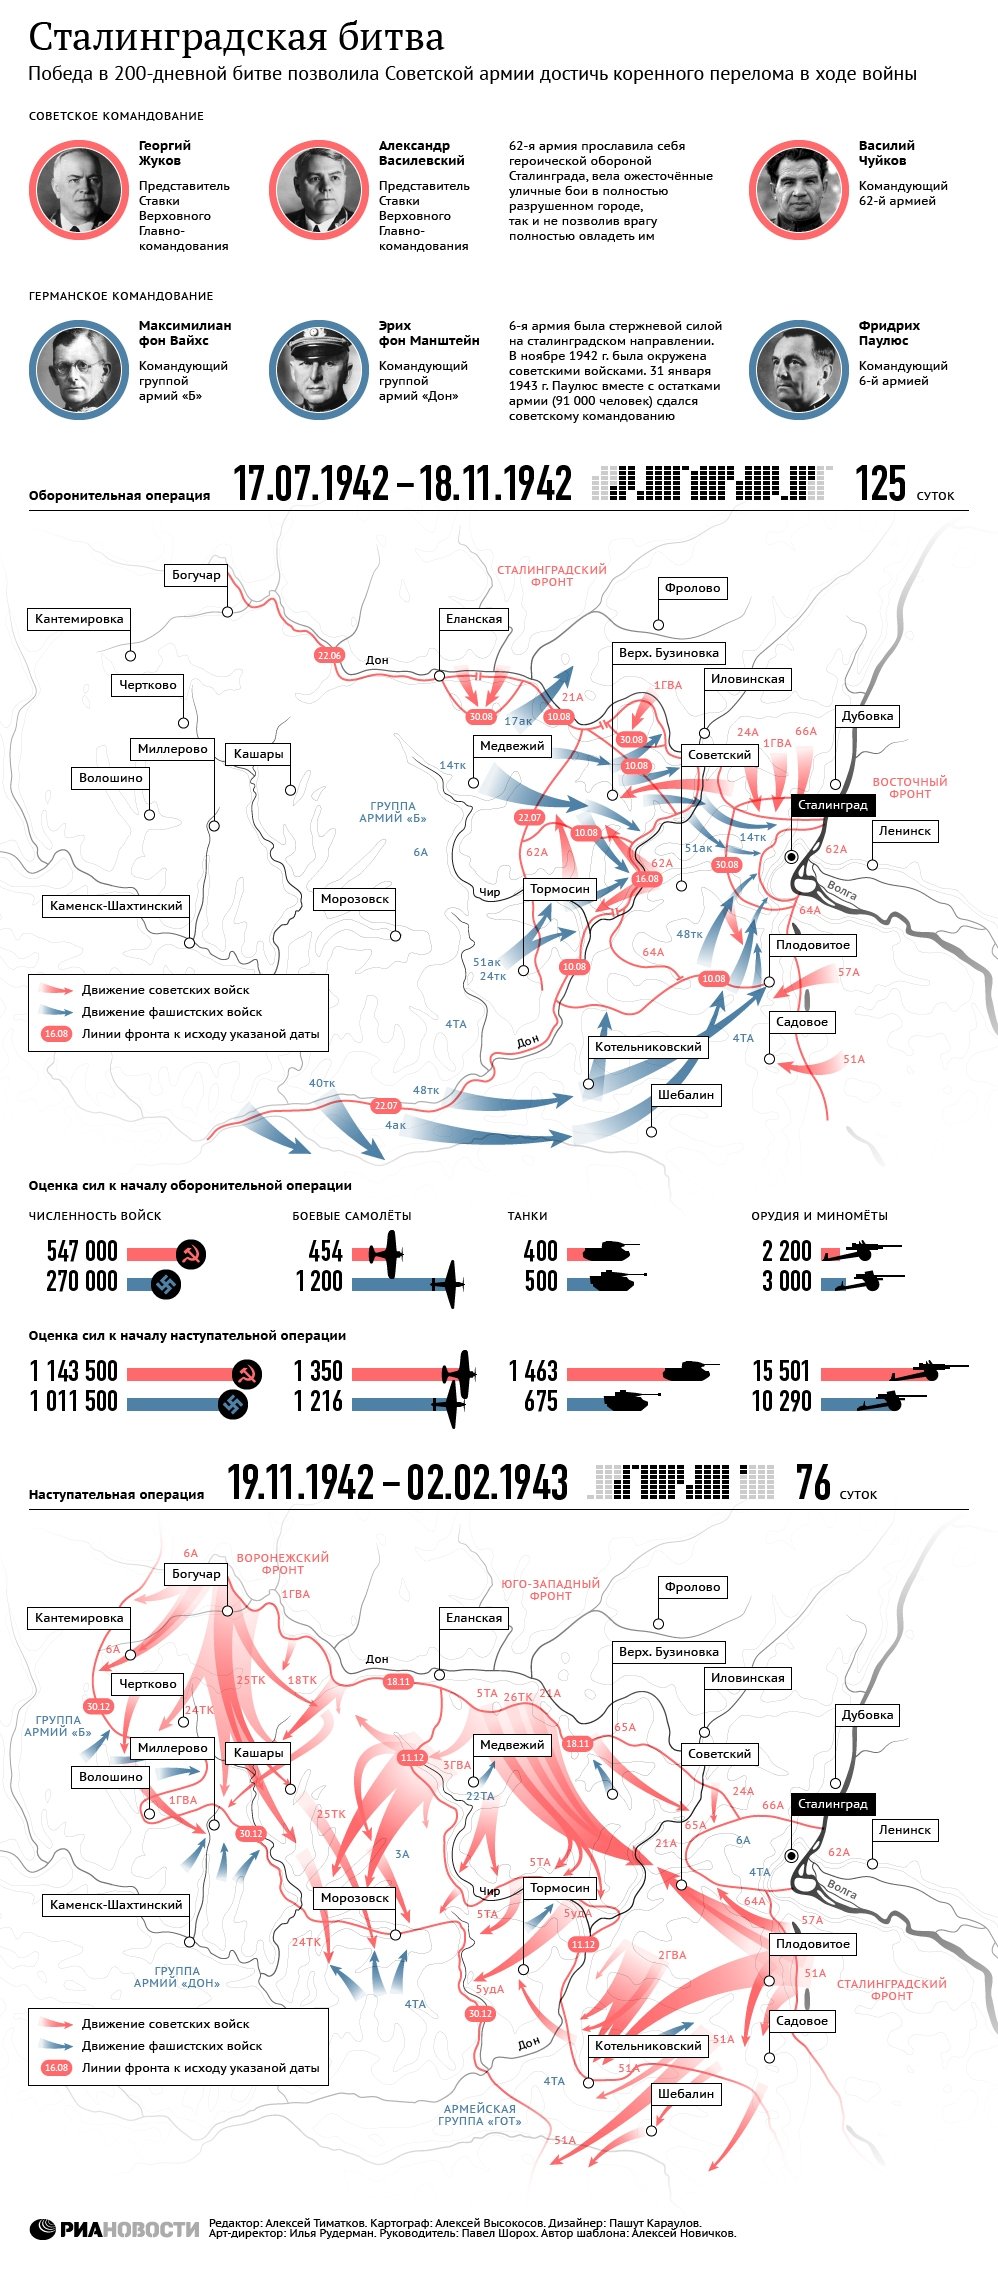 Сталинградская битва: к годовщине разгрома фашистской армии